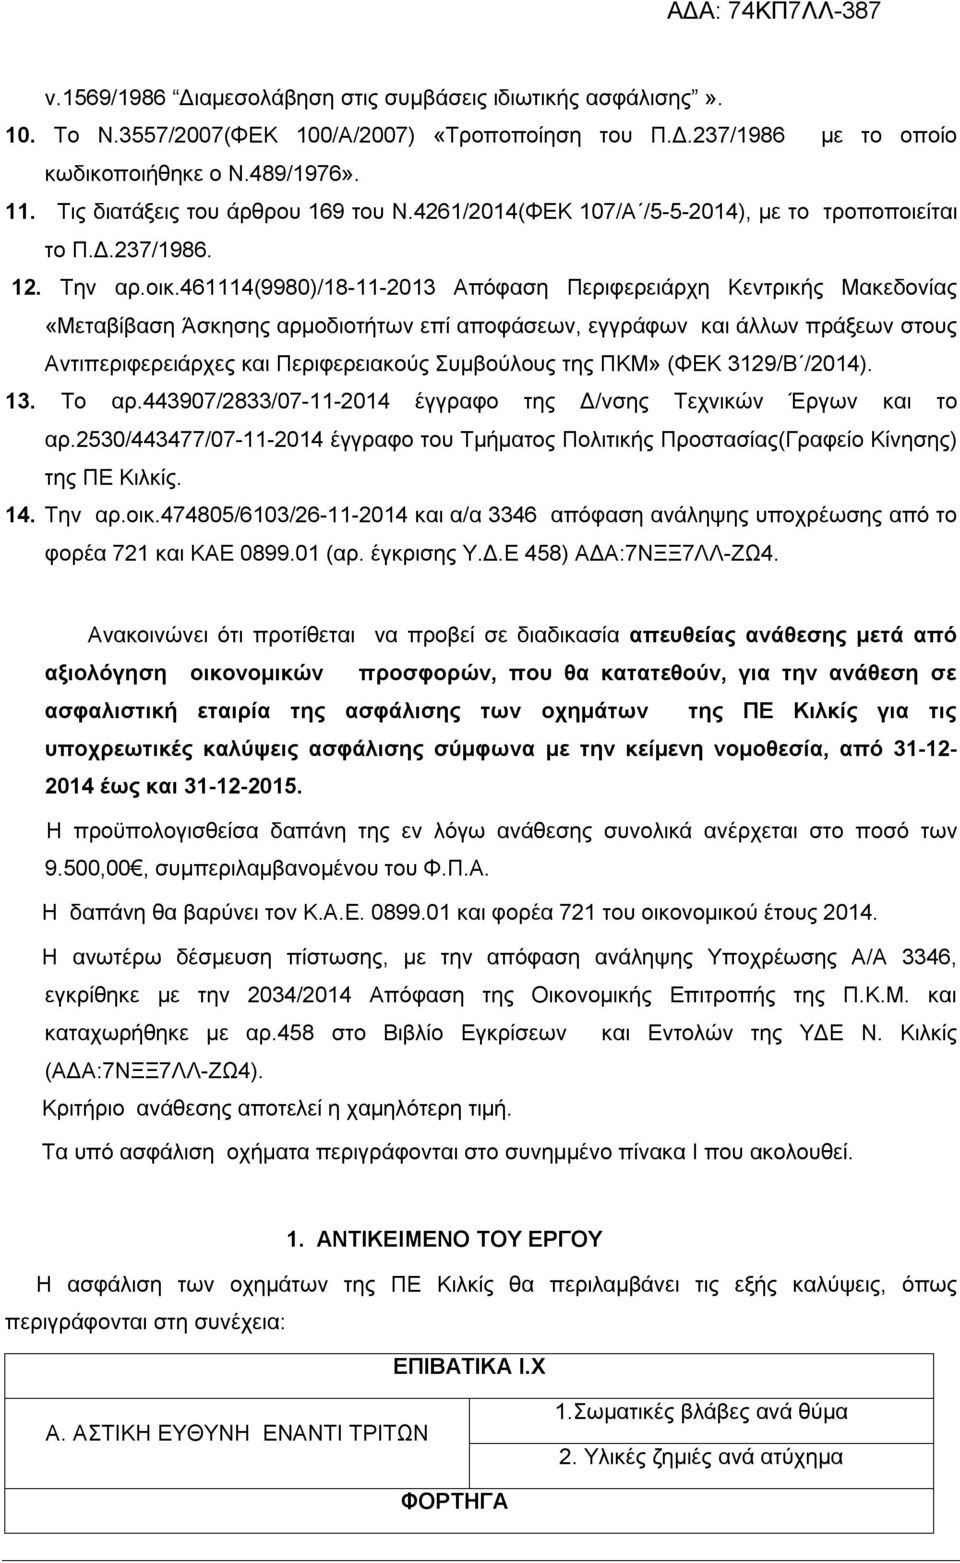 461114(9980)/18-11-2013 Απόφαση Περιφερειάρχη Κεντρικής Μακεδονίας «Μεταβίβαση Άσκησης αρμοδιοτήτων επί αποφάσεων, εγγράφων και άλλων πράξεων στους Αντιπεριφερειάρχες και Περιφερειακούς Συμβούλους